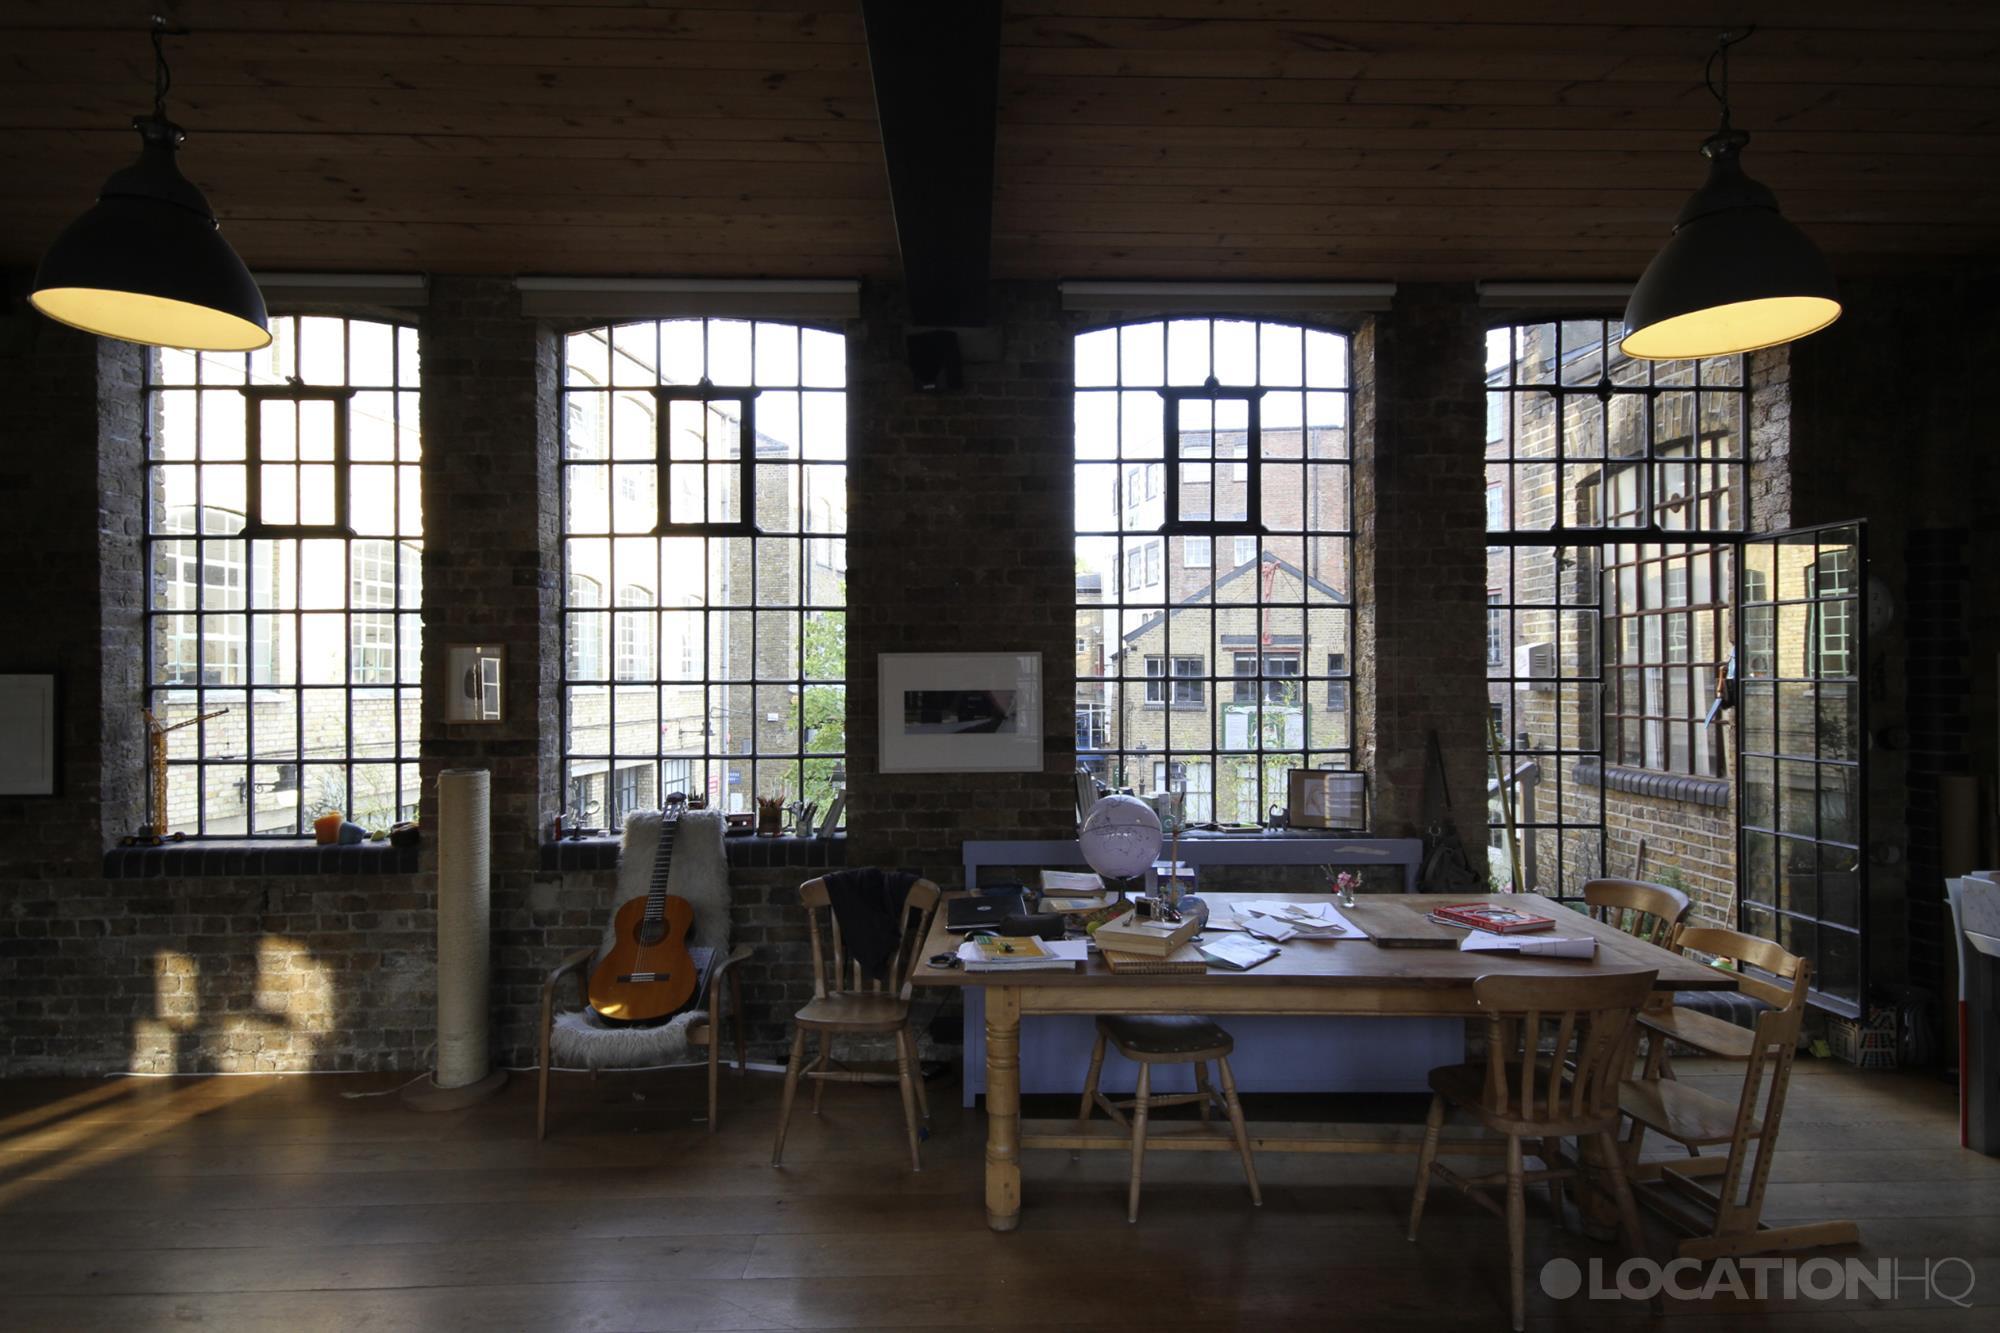 Premium Photo | Industrial loft design of office interior